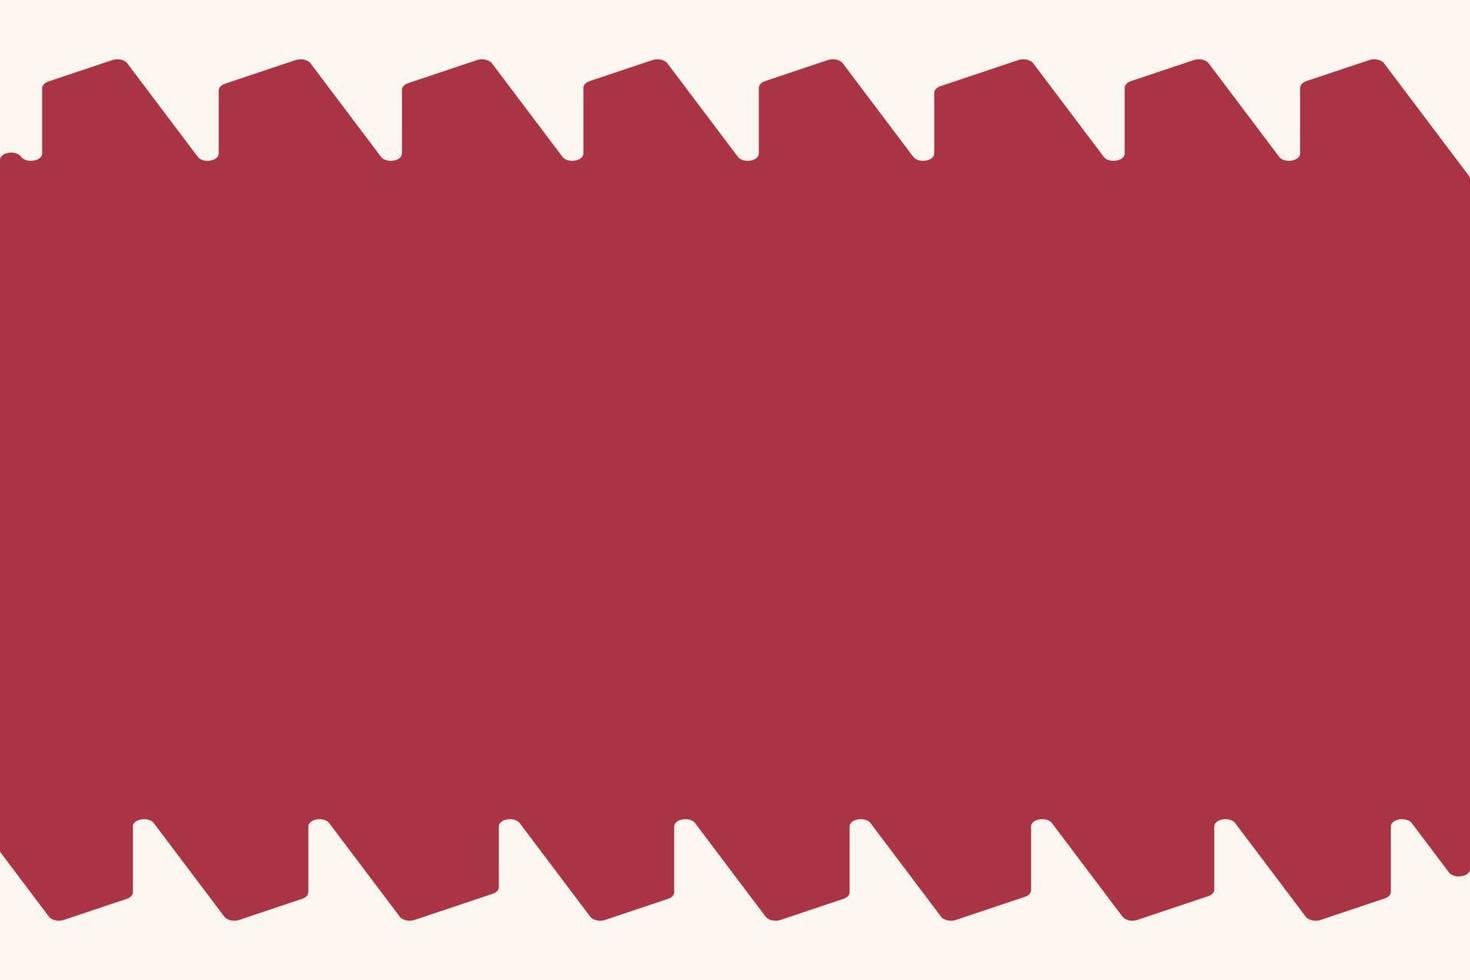 vistoso marco en de moda monocromo rojo colores con decorativo resumen triangular elementos. eps vector